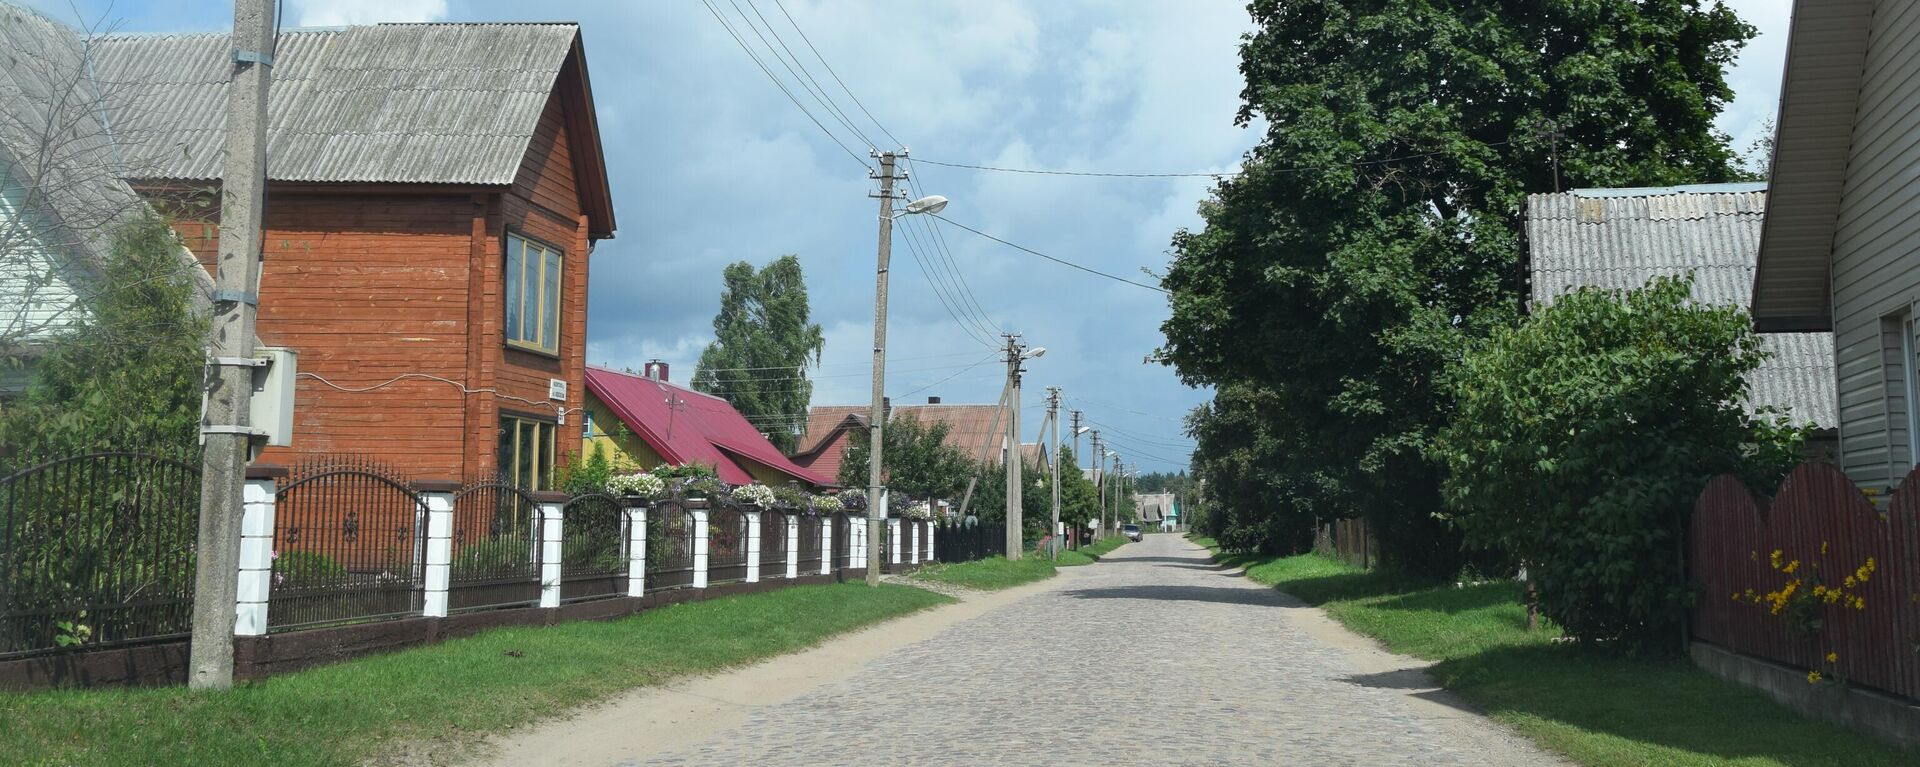 Rūdninkų kaimas - Sputnik Lietuva, 1920, 07.09.2021